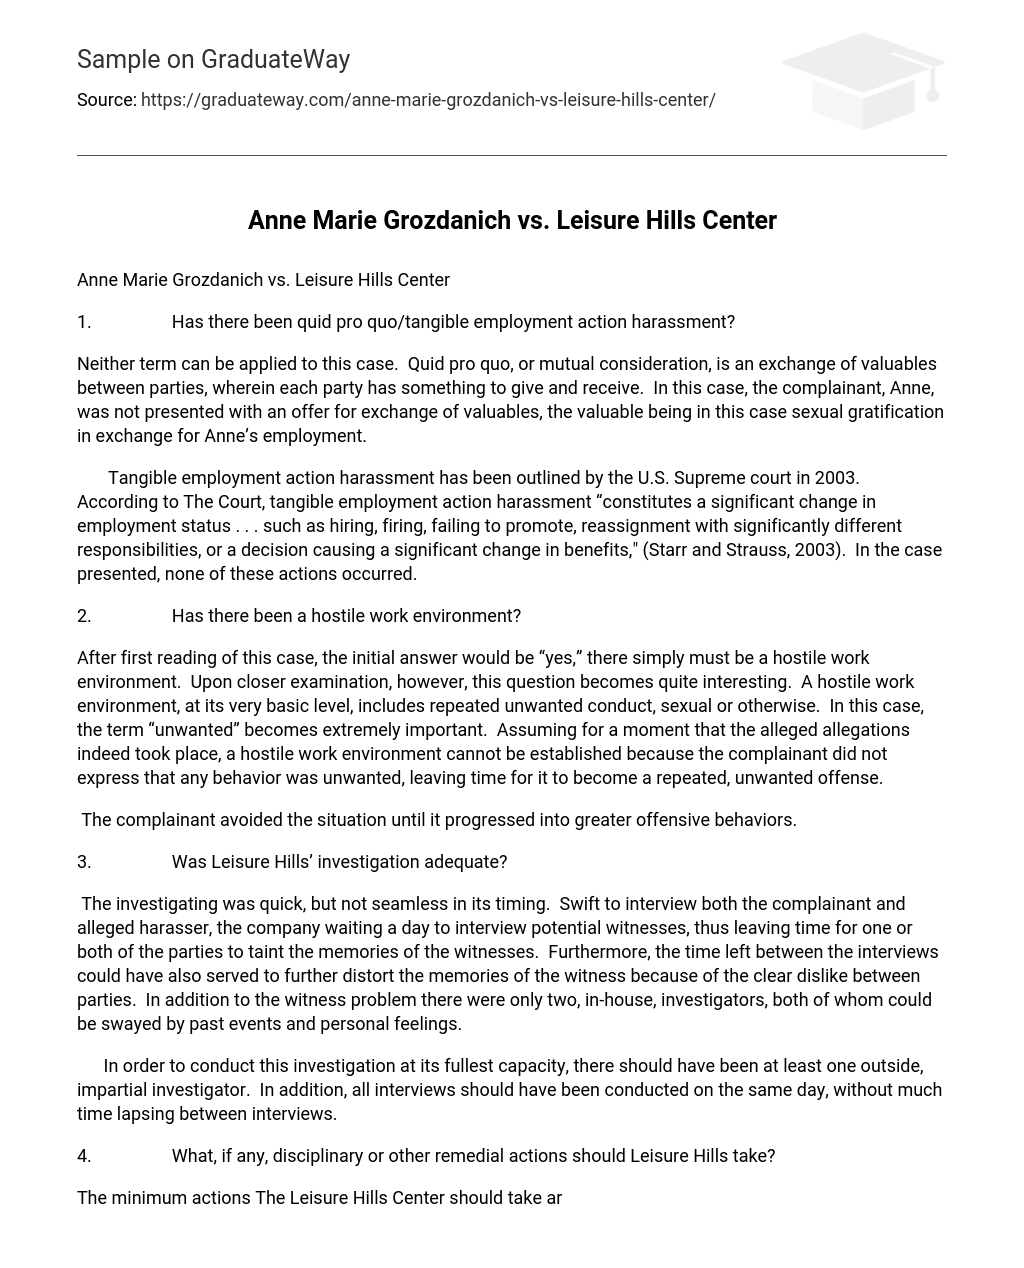 Anne Marie Grozdanich vs. Leisure Hills Center